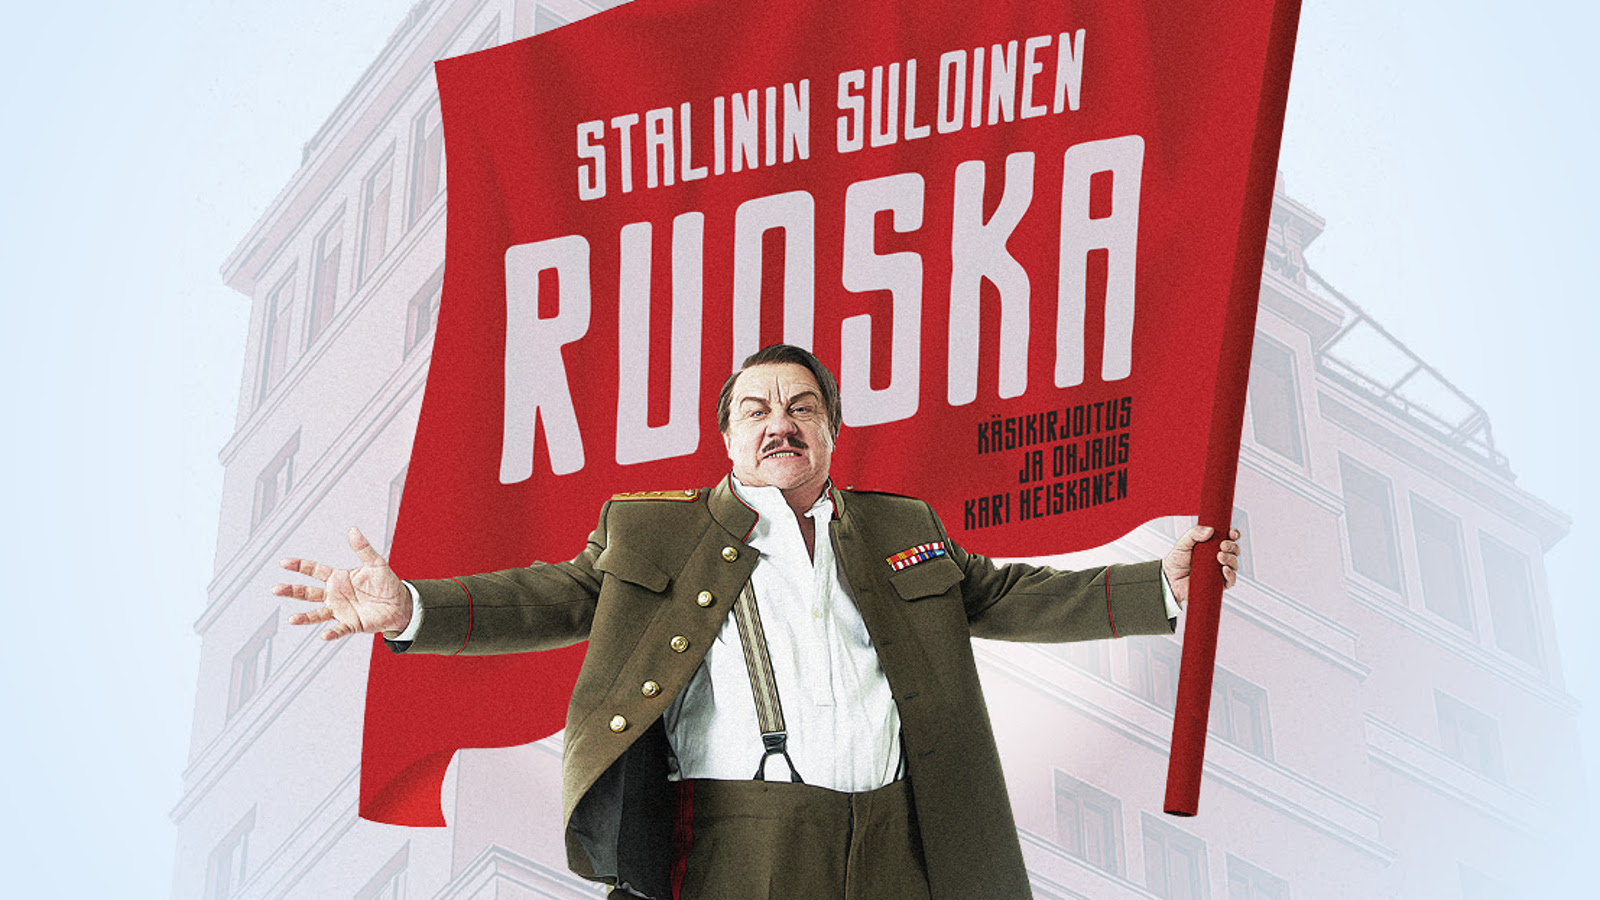 Stalinin suloinen ruoska on Helsingin Kaupunginteatterin kevätkauden 2020 uutuusnäytelmä.